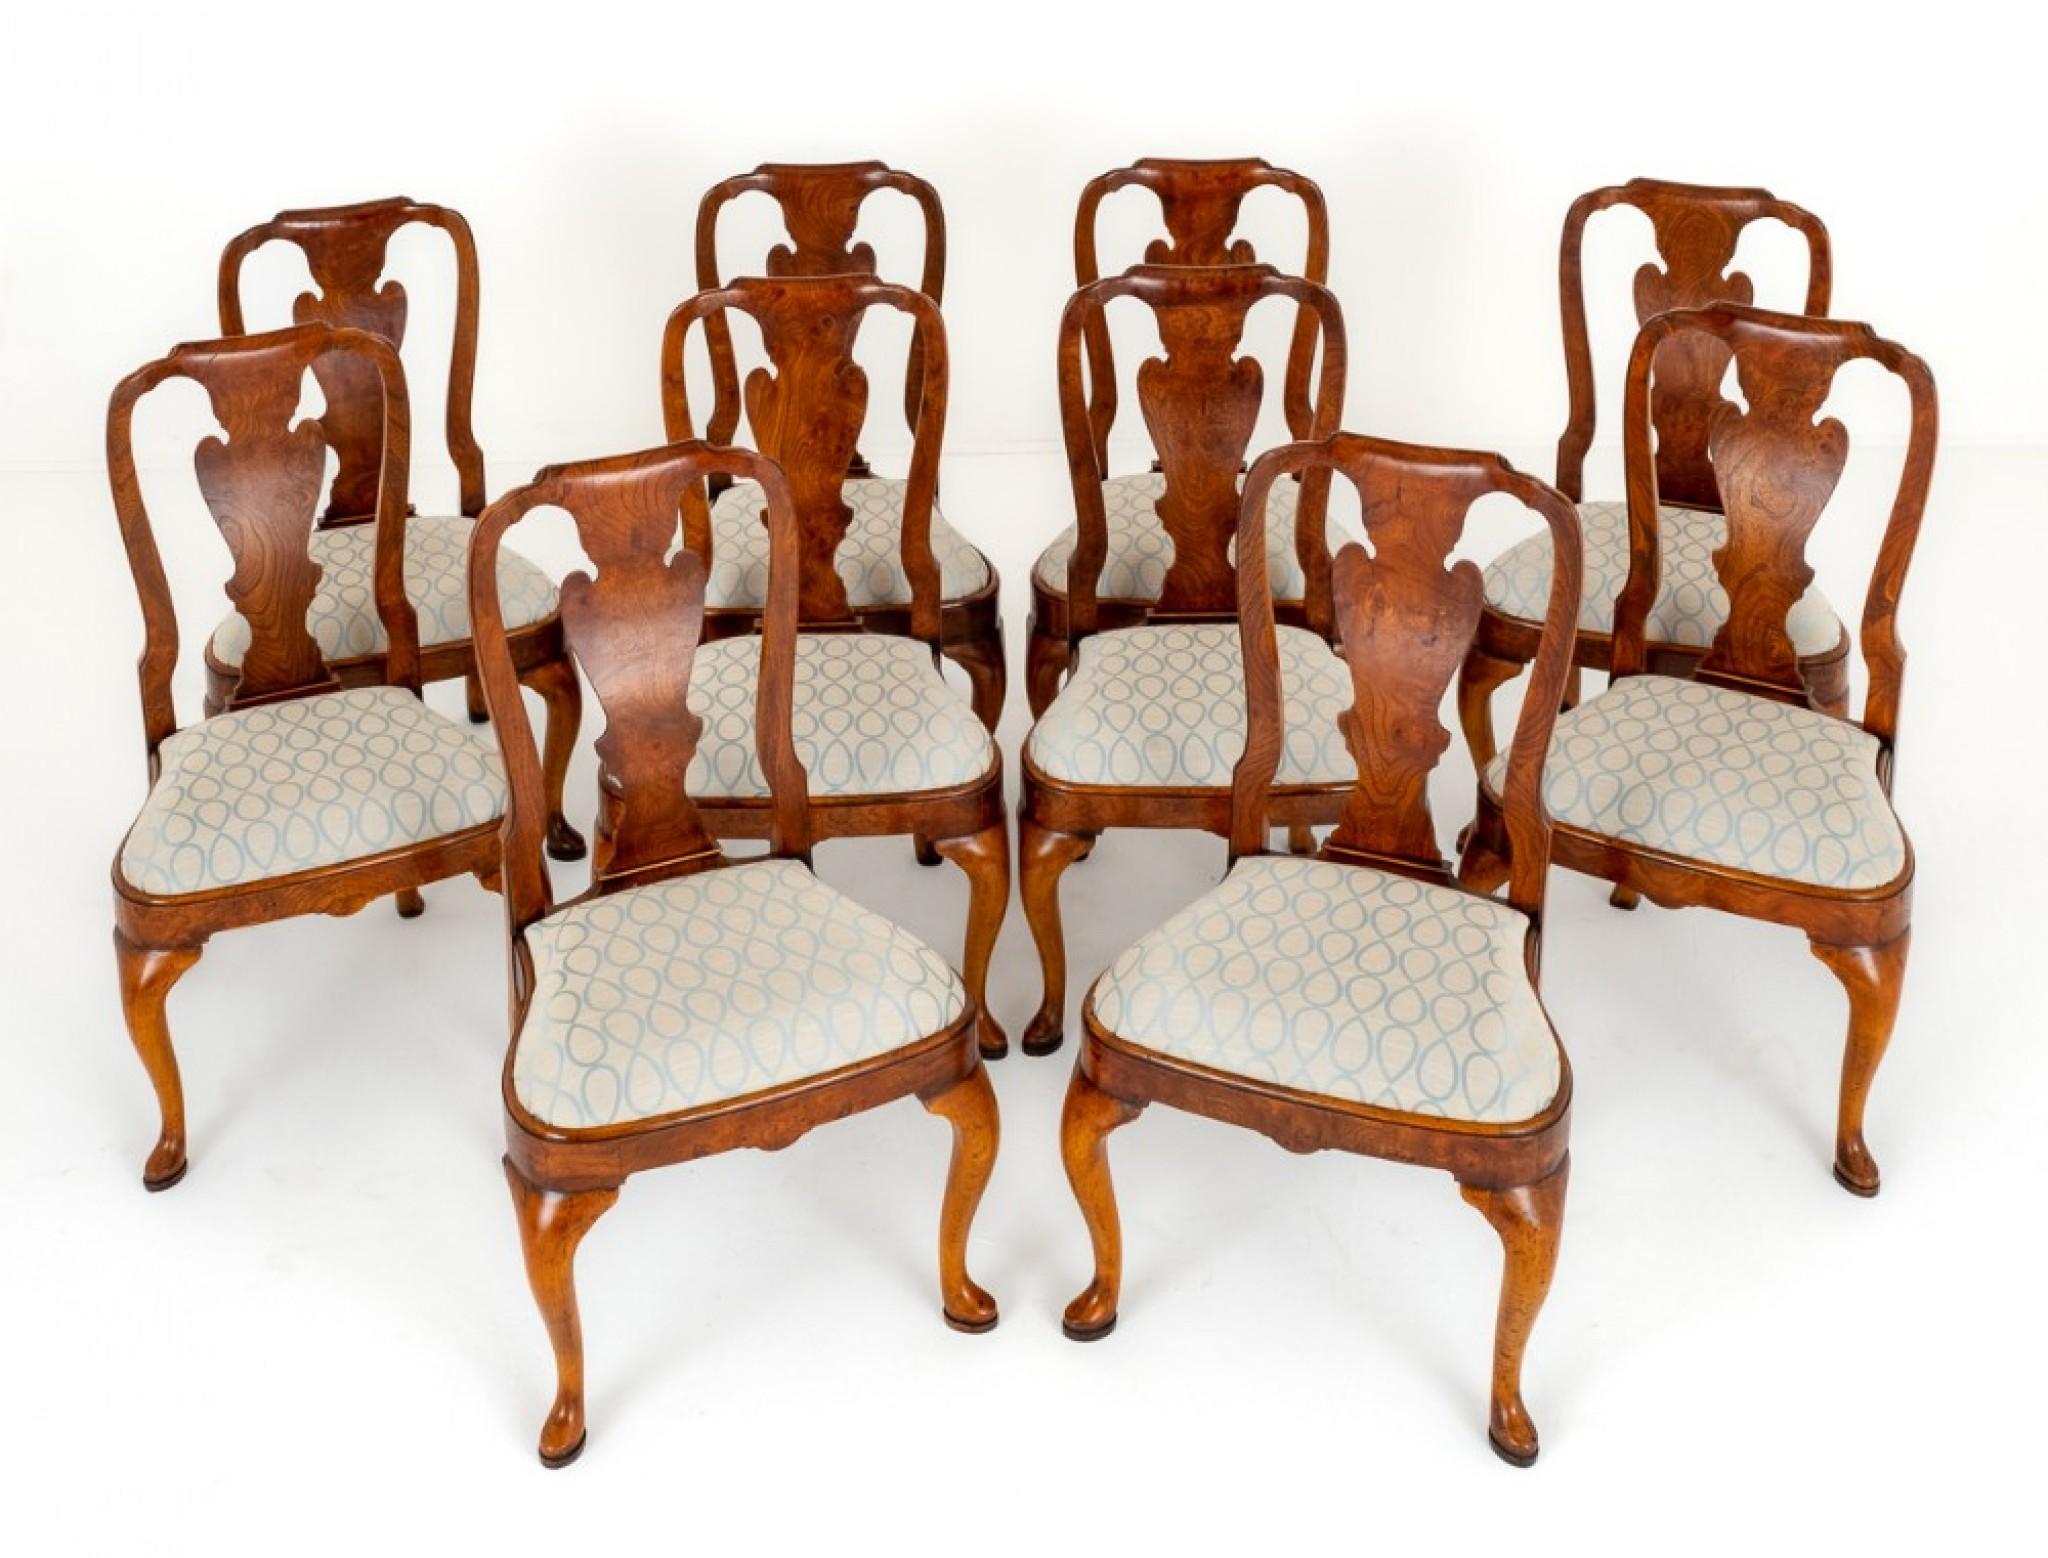 Ensemble de 10 chaises de salle à manger en orme de style Queen Anne.
Circa 1920
Ces chaises reposent sur des pieds avant en cabriole avec des pieds pad et des dossiers balayés.
Les sièges relevables ont été récemment retapissés.
Le dosseret est